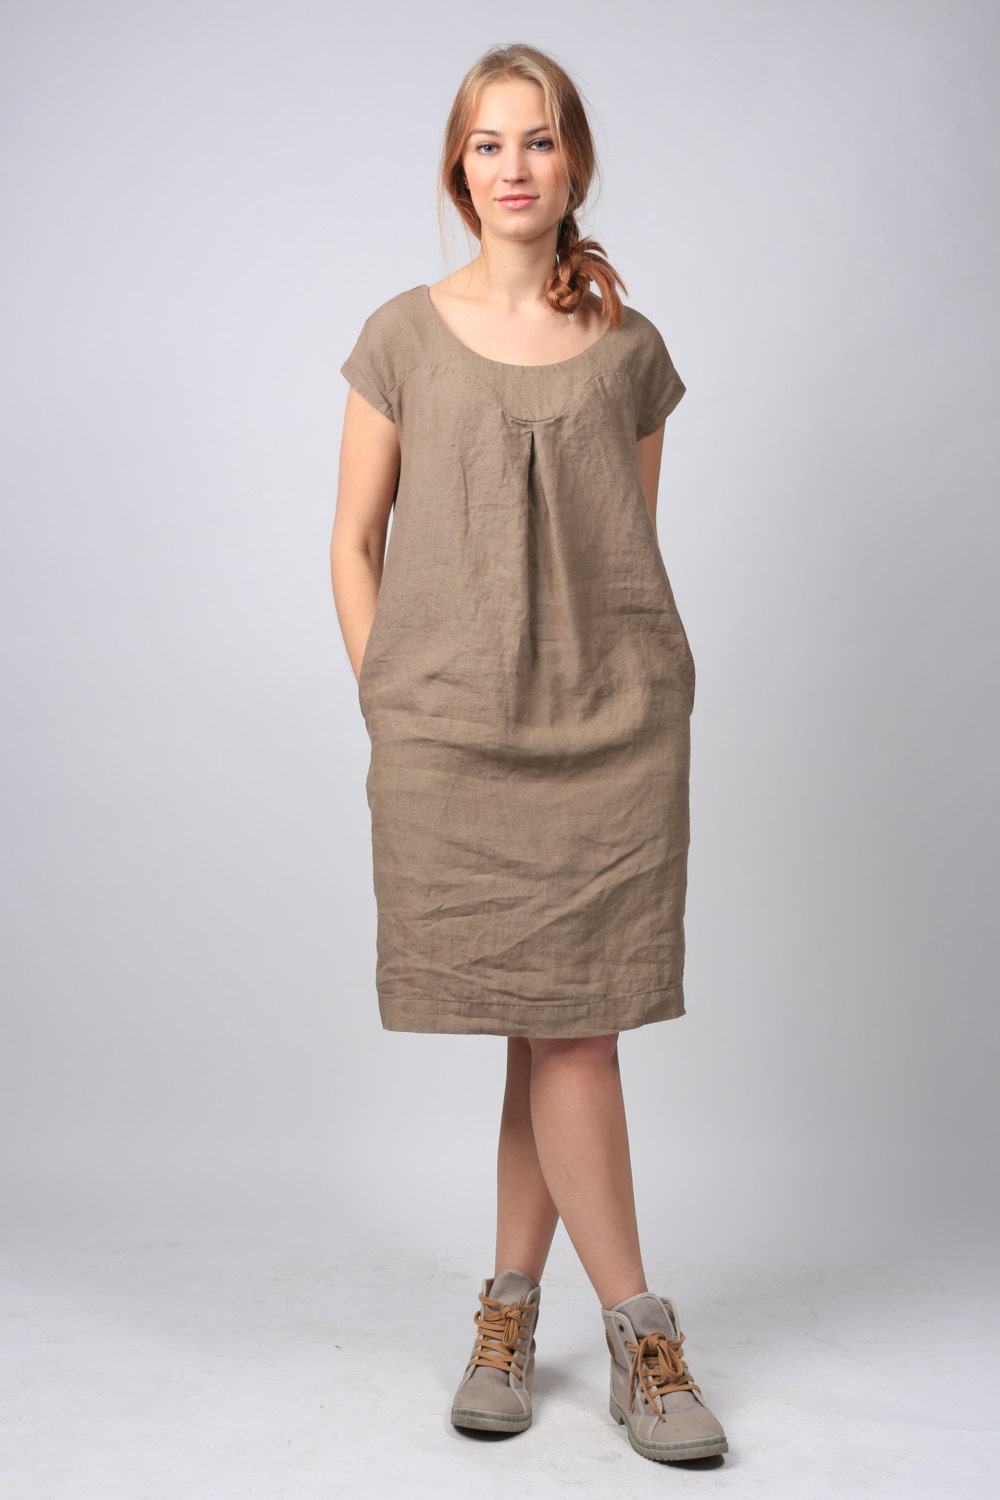 Linen dress linen tunic dress Simple Casual linen clothing